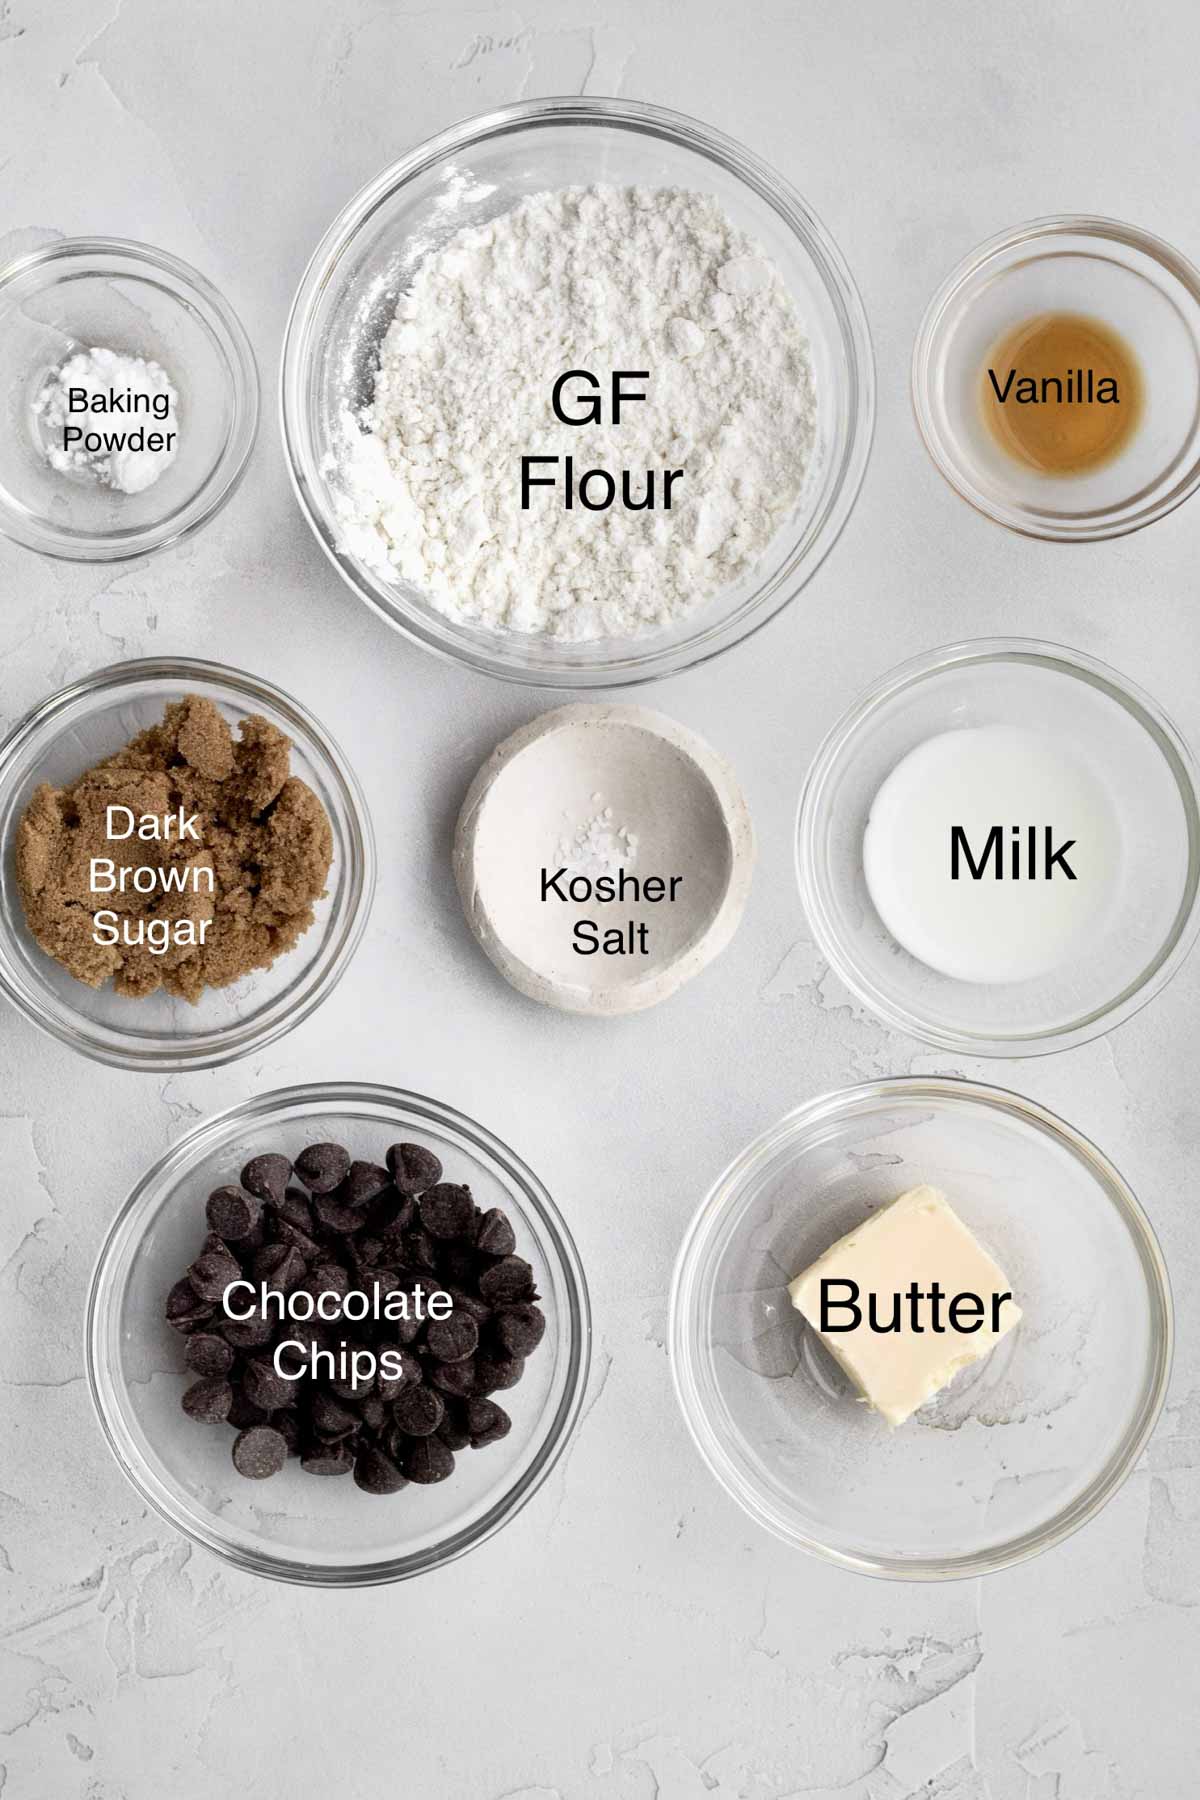 Baking powder, gluten free flour, vanilla, dark brown sugar, kosher salt, milk, chocolate chips and butter in separate containers.